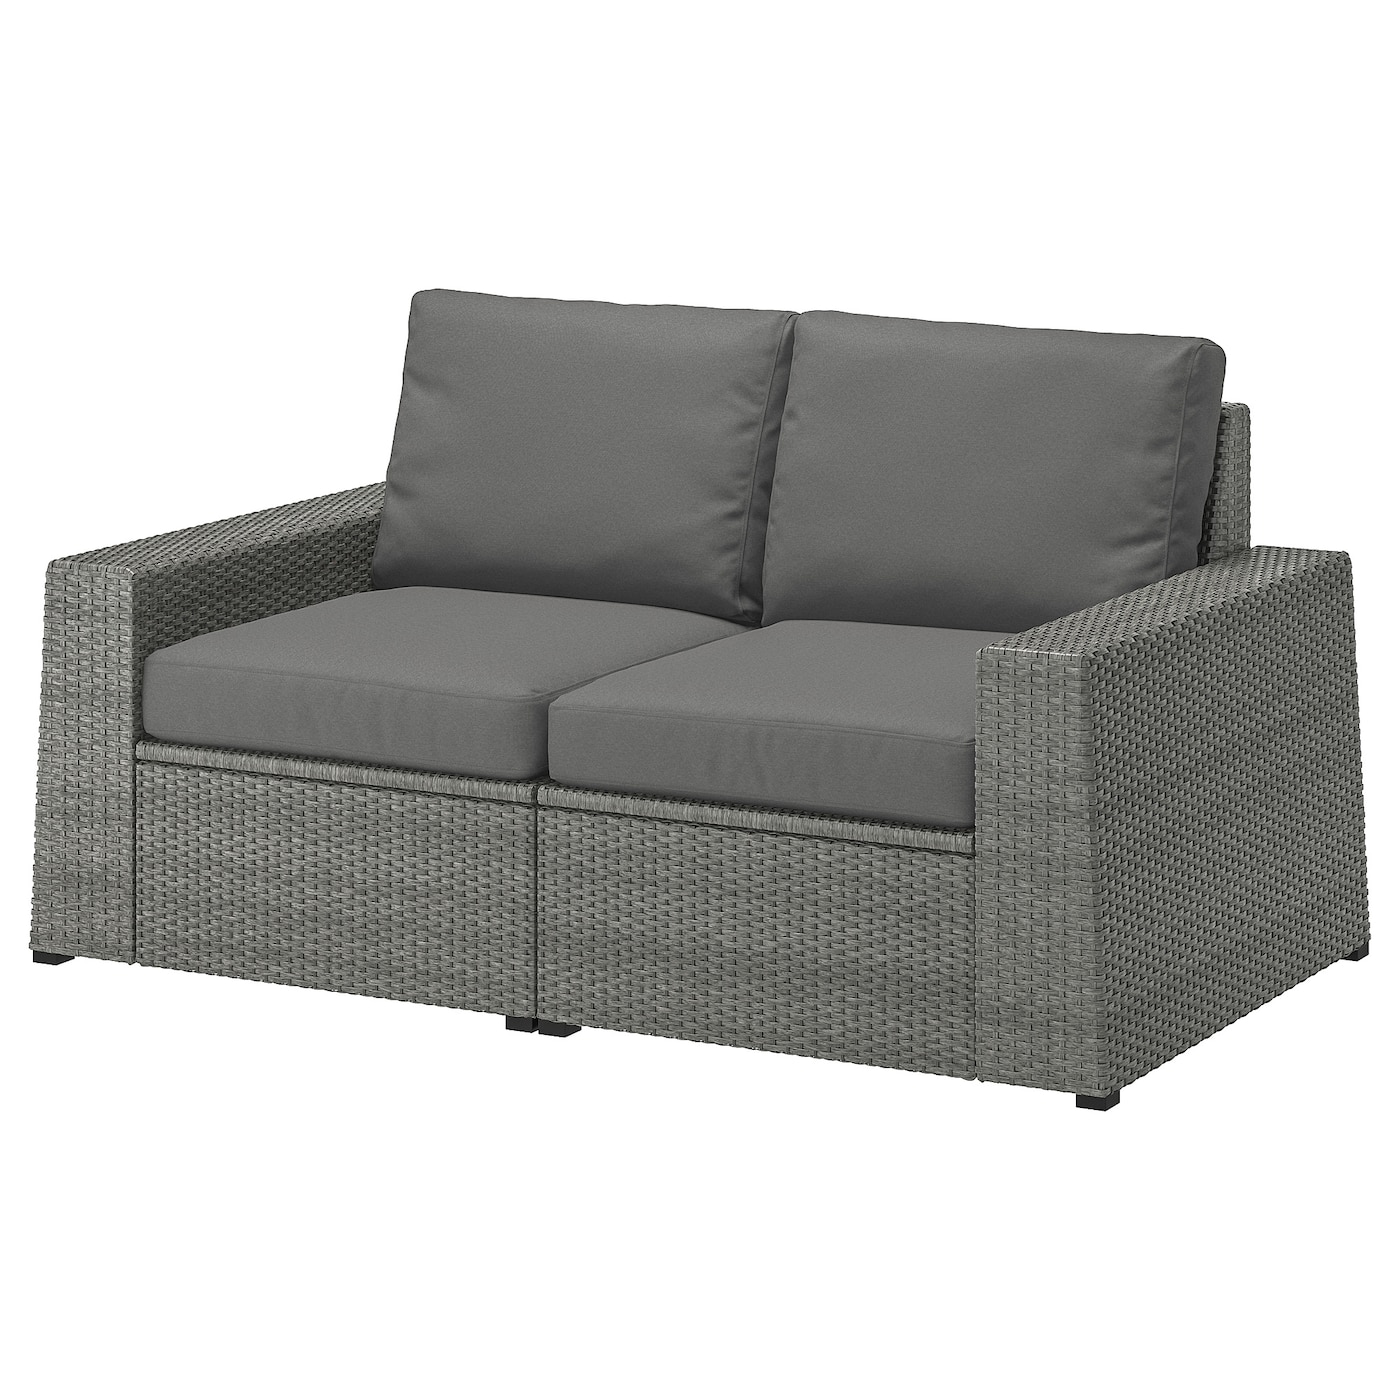 2-местный модульный диван - IKEA SOLLERÖN/SOLLERON/СОЛЛЕРОН ИКЕА, 88х82х161 см, темно-серый